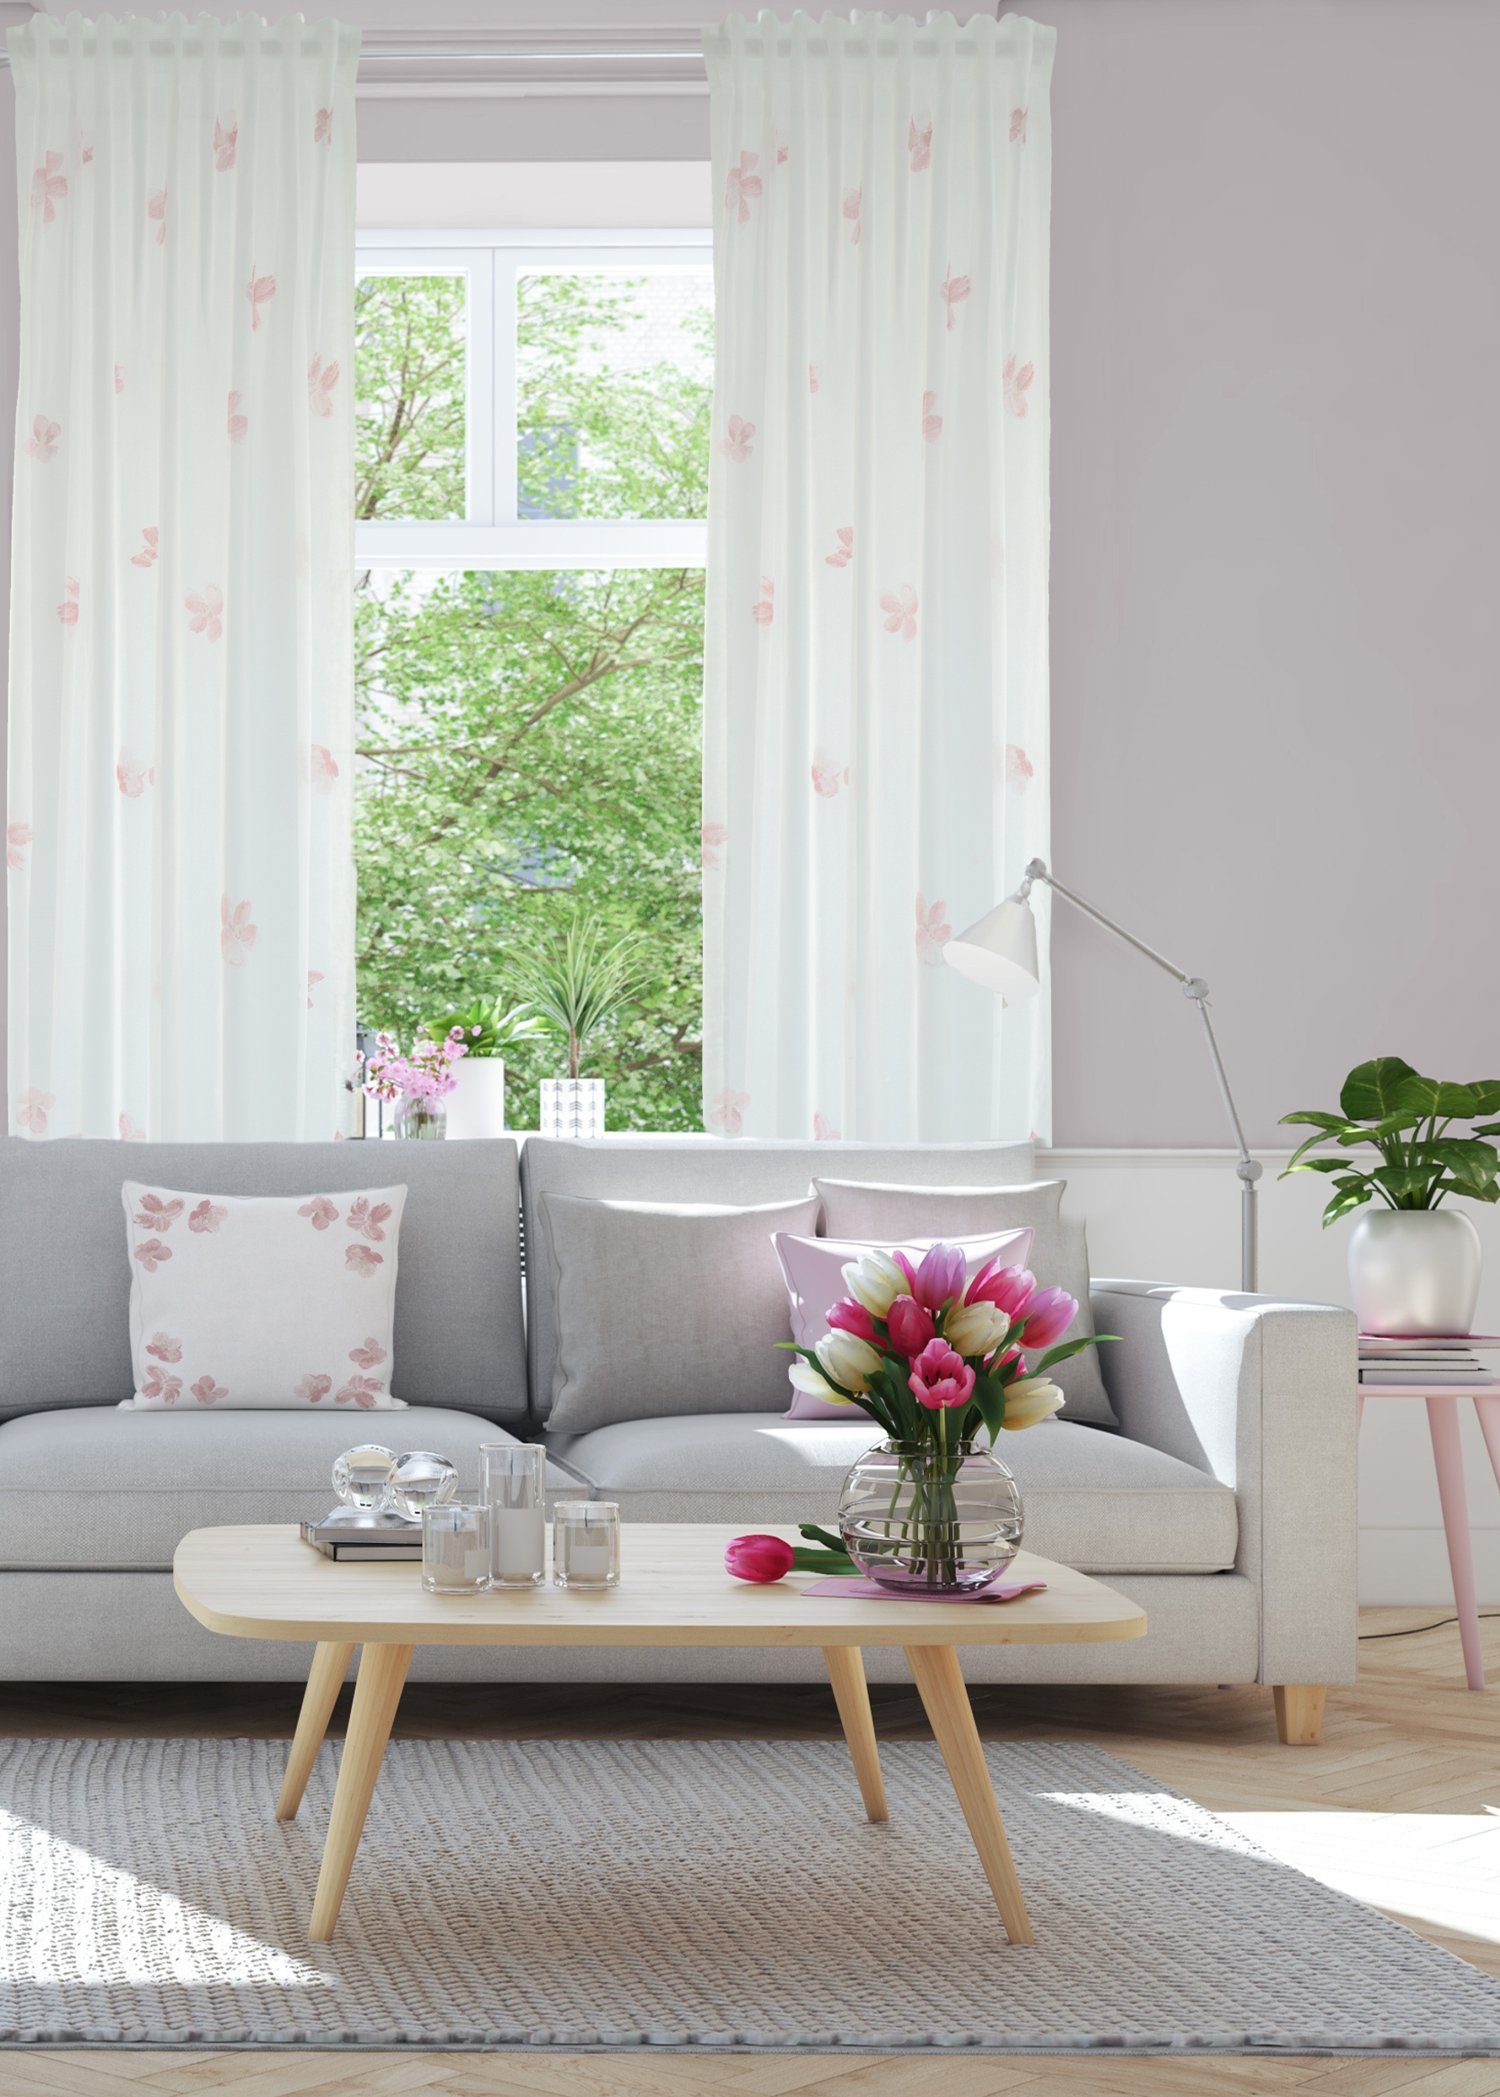 Vorhang, HOMING, Verdeckter Schlaufenschal Minato 140x245cm Farbe: weiß-rose